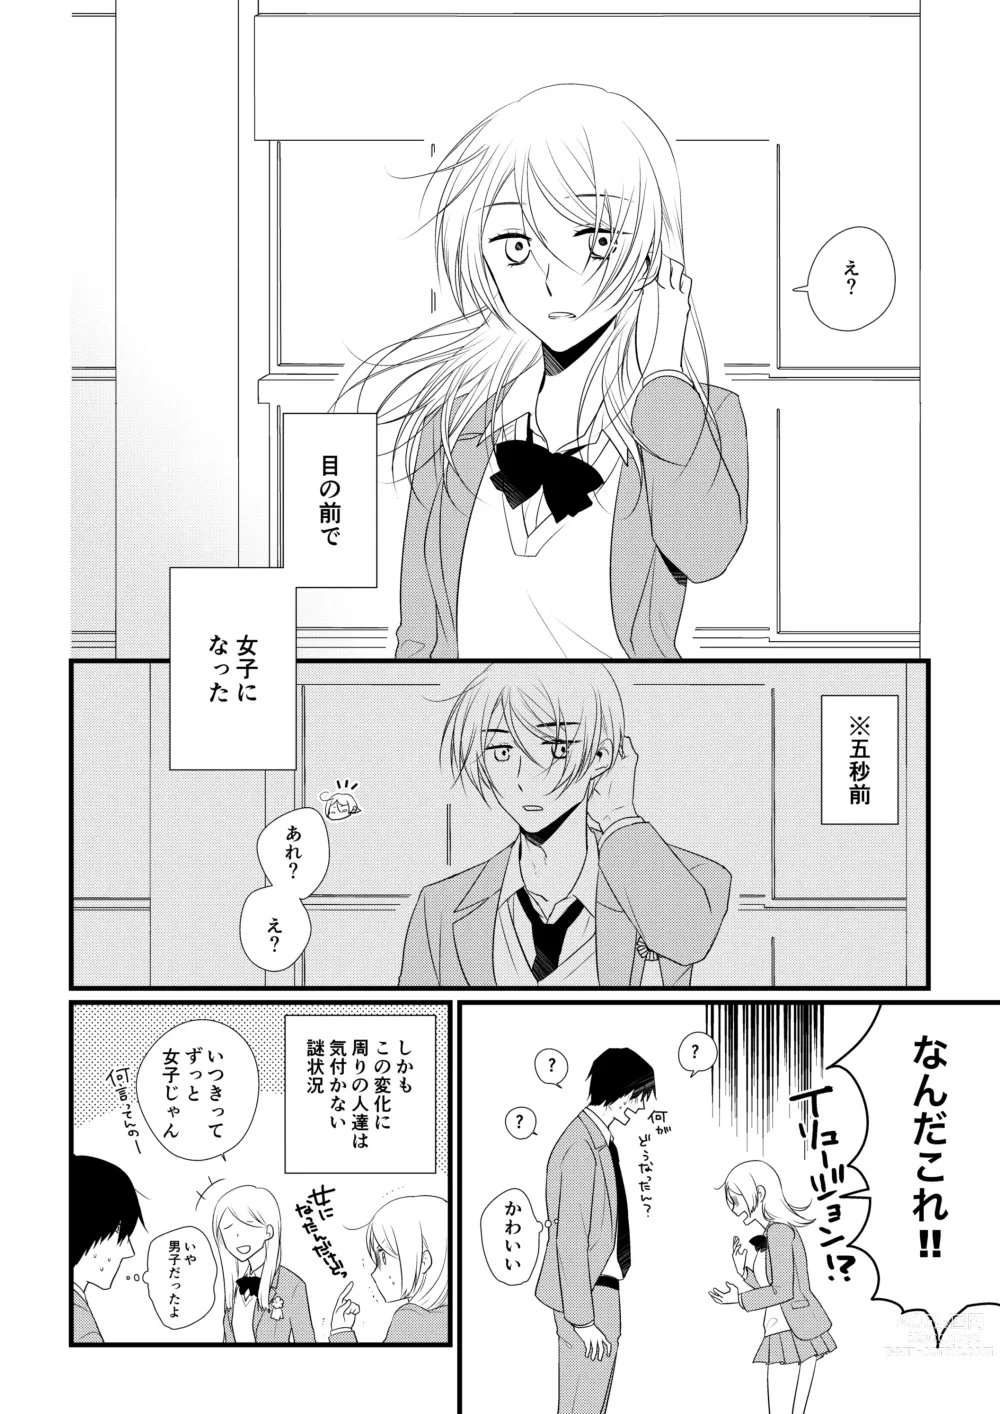 Page 5 of doujinshi Itsuki to Yuusei